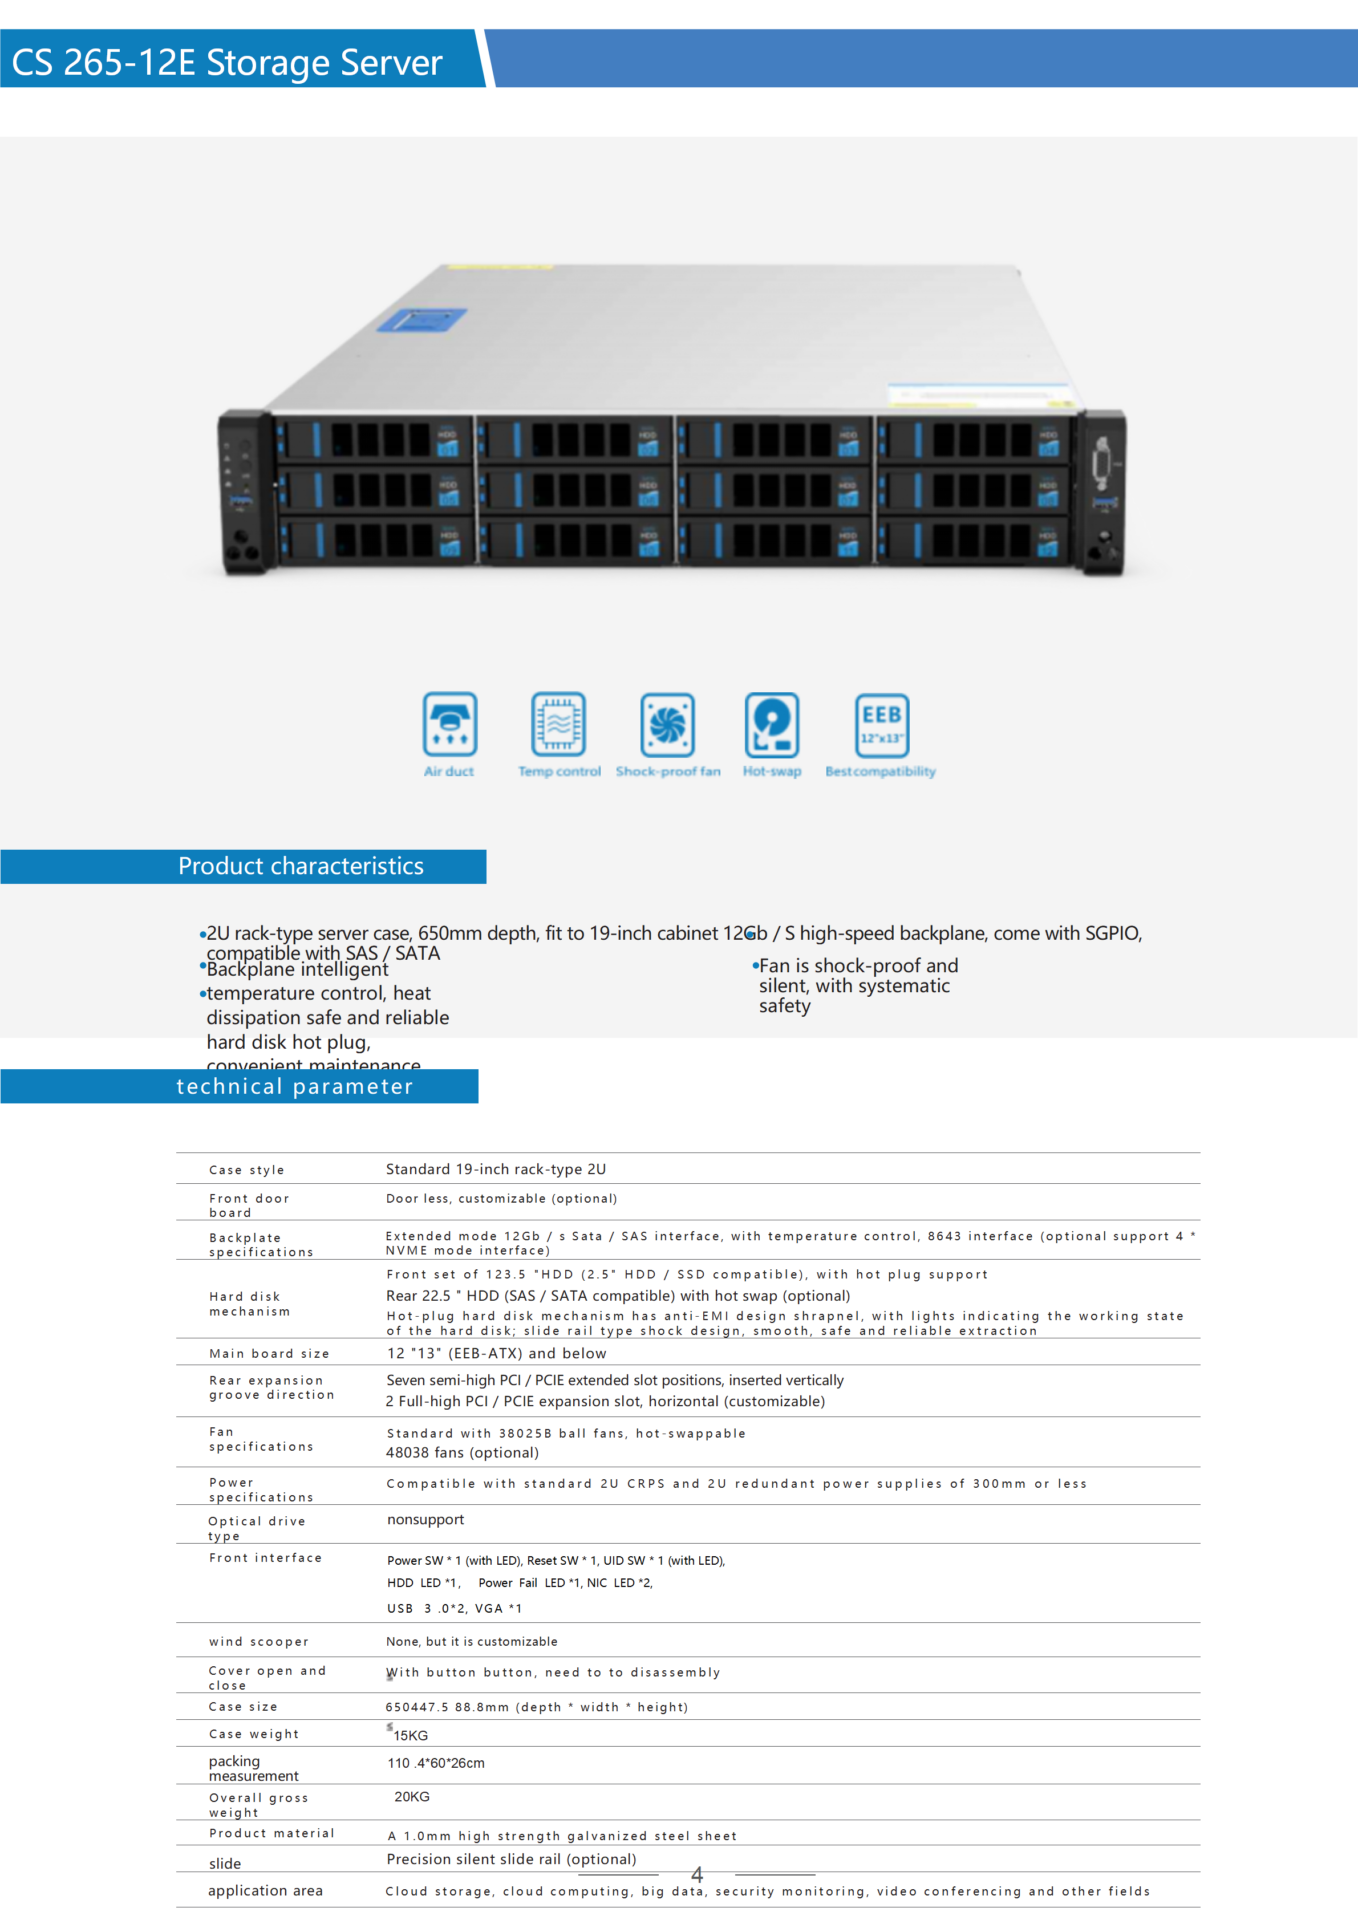 CS 265-12E Storage Server chassis 2